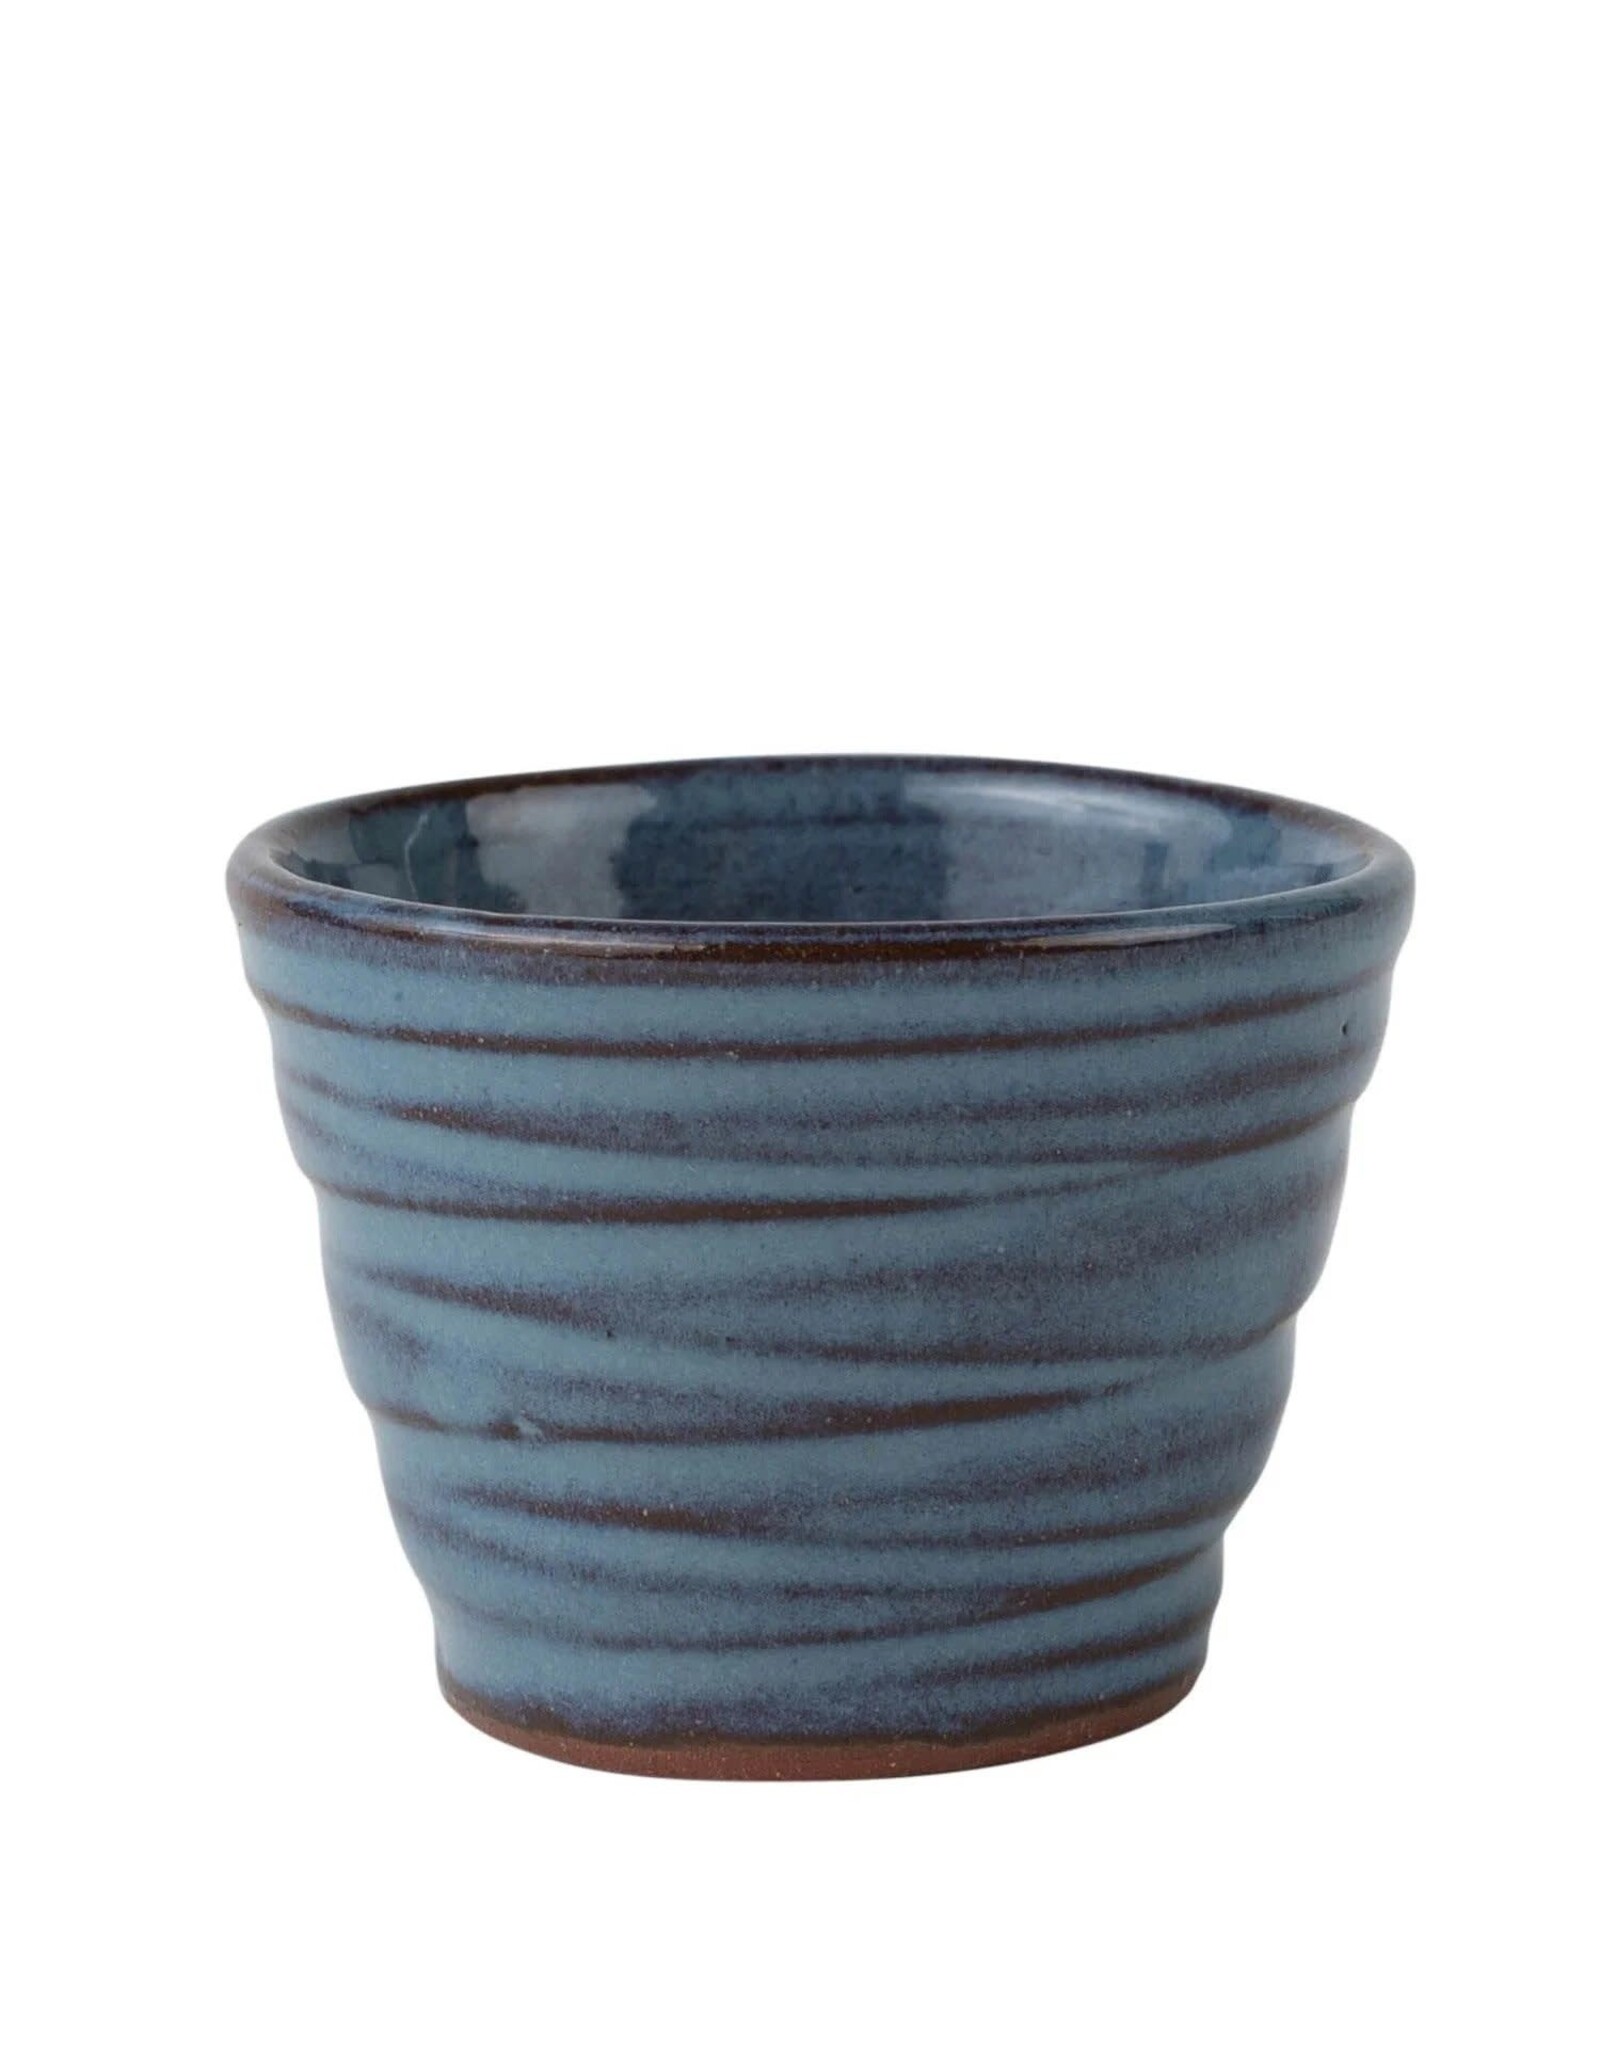 Trade roots Ceramic Sake Cup, Nepal